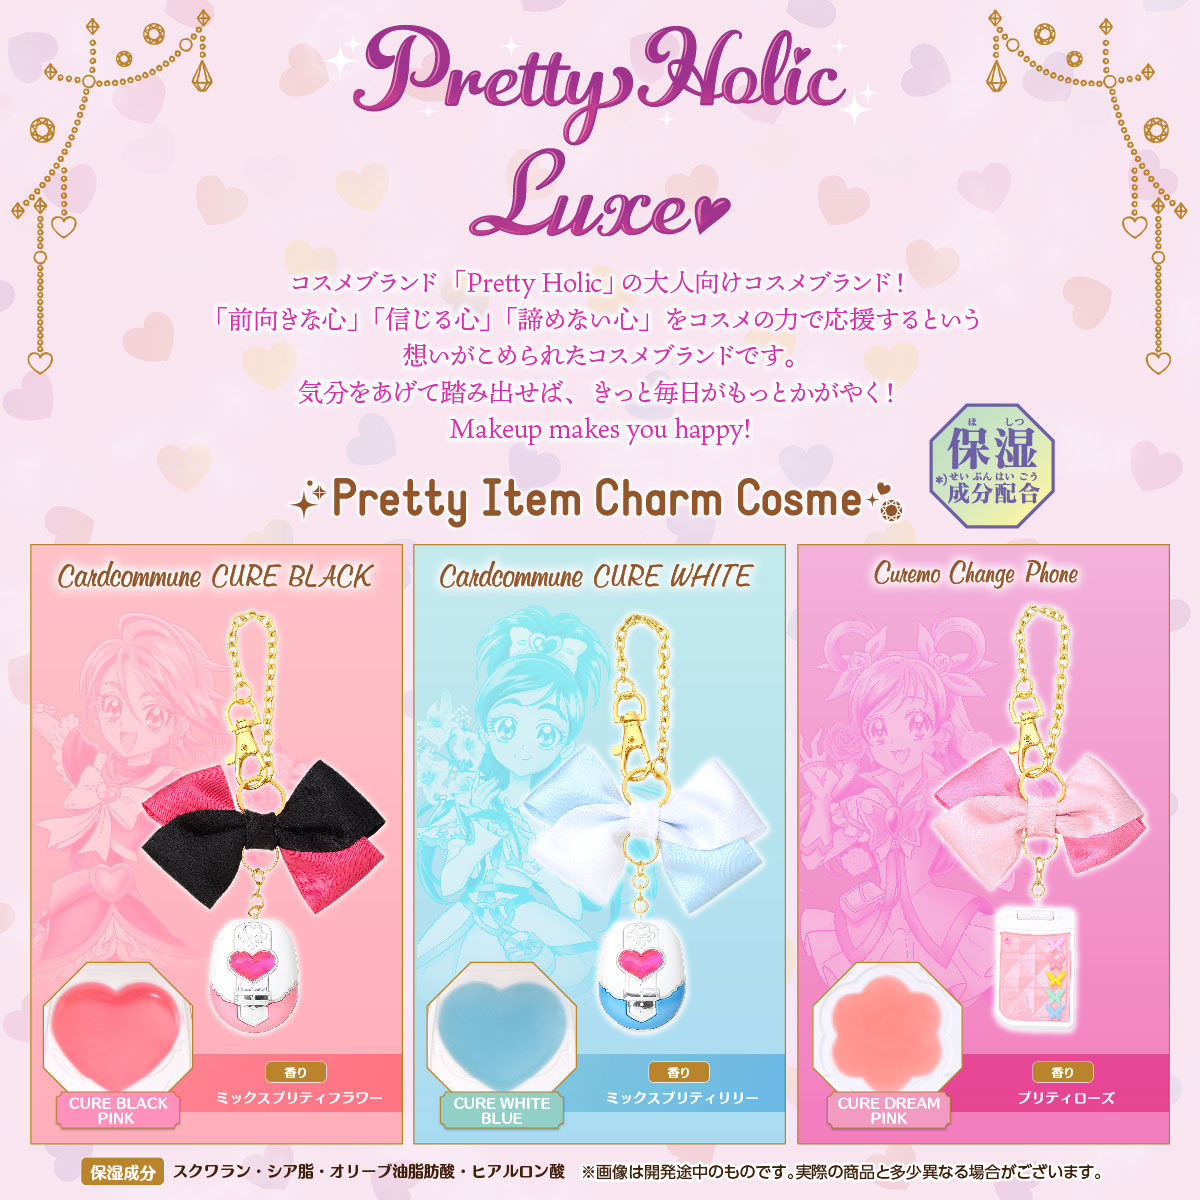 プリキュア Pretty Holic Luxe 大人向けコスメチャームが10月に新発売